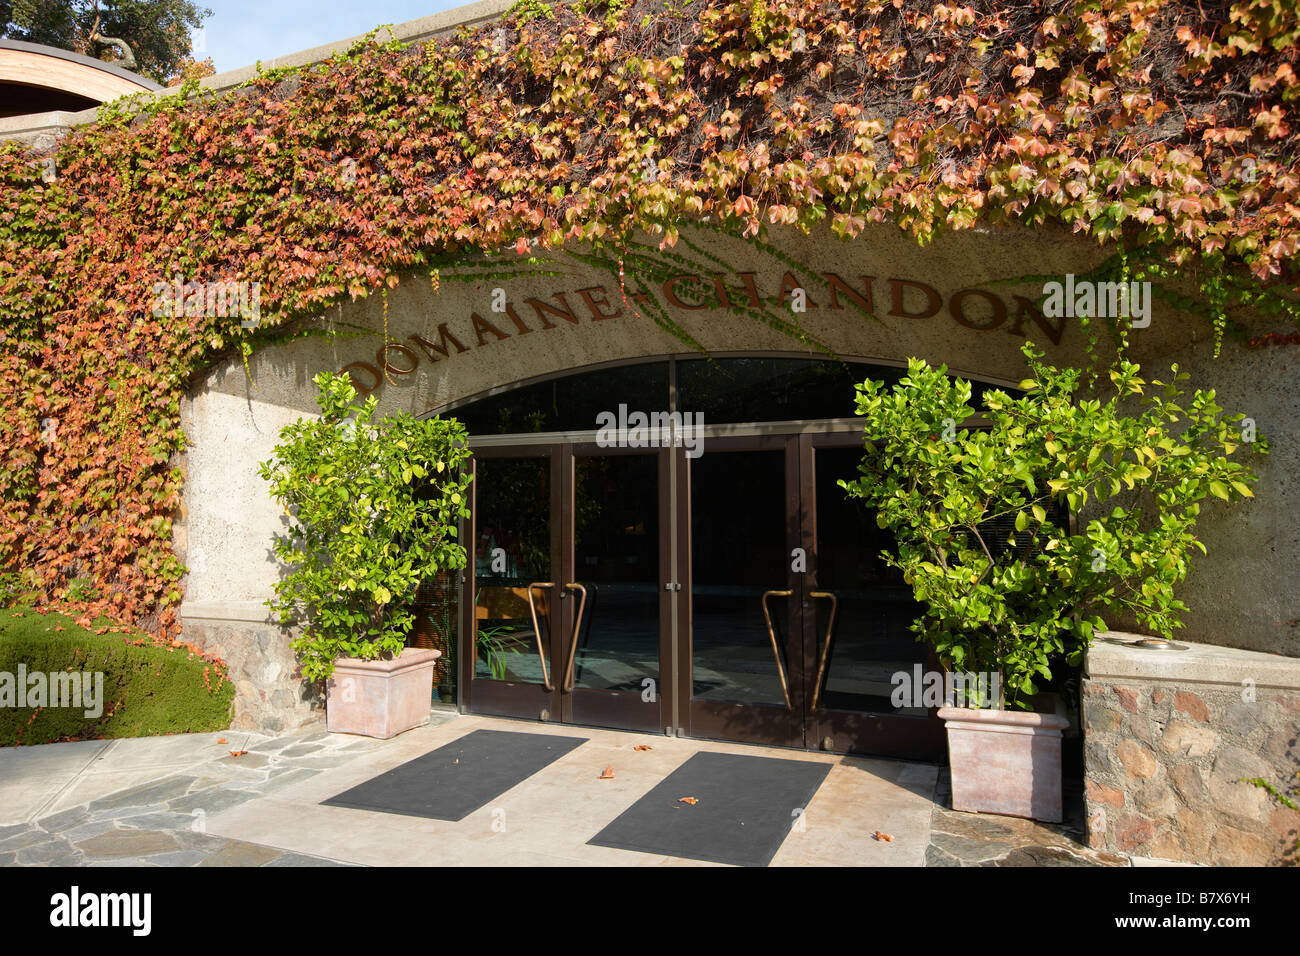 Domaine Chandon winery. Napa Valley, California, USA. Stock Photo